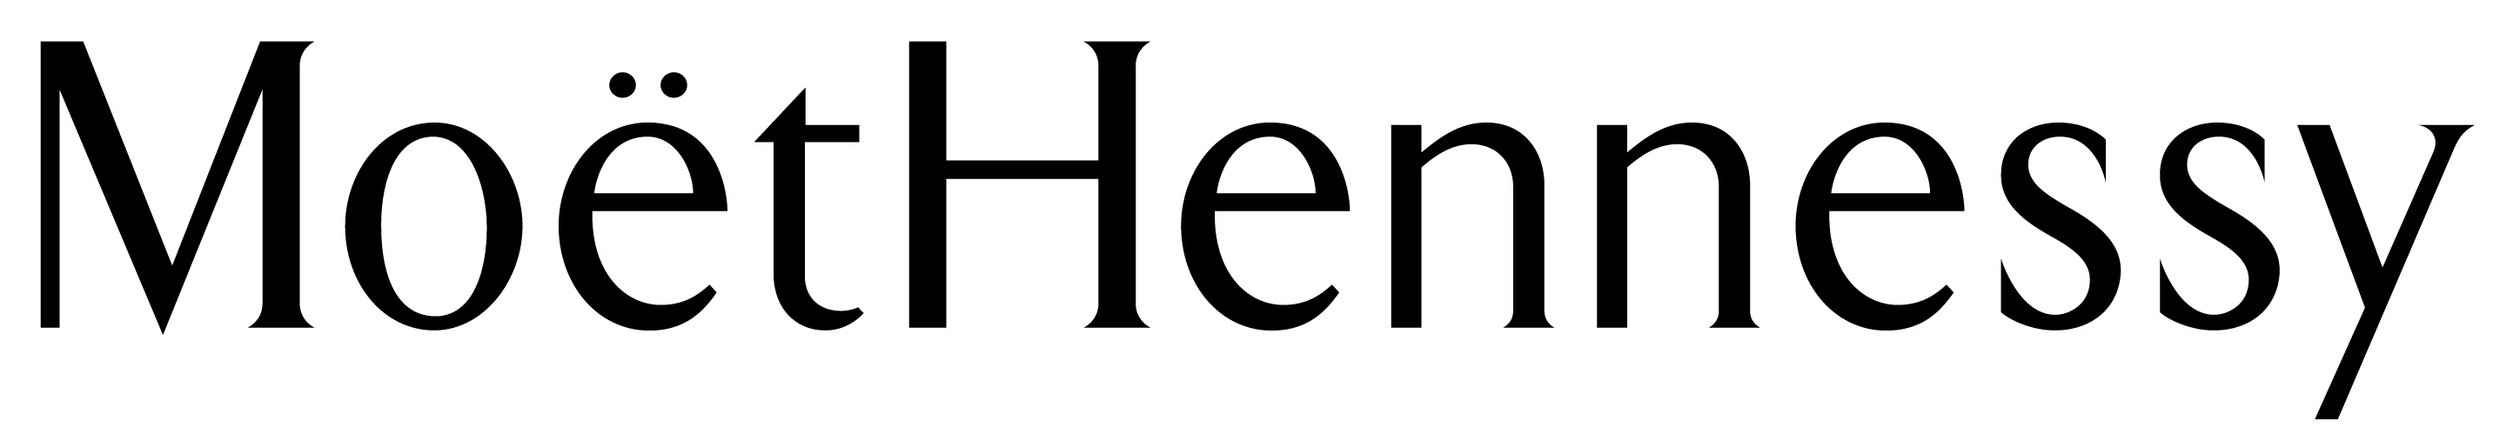 Moet Hennessy logo